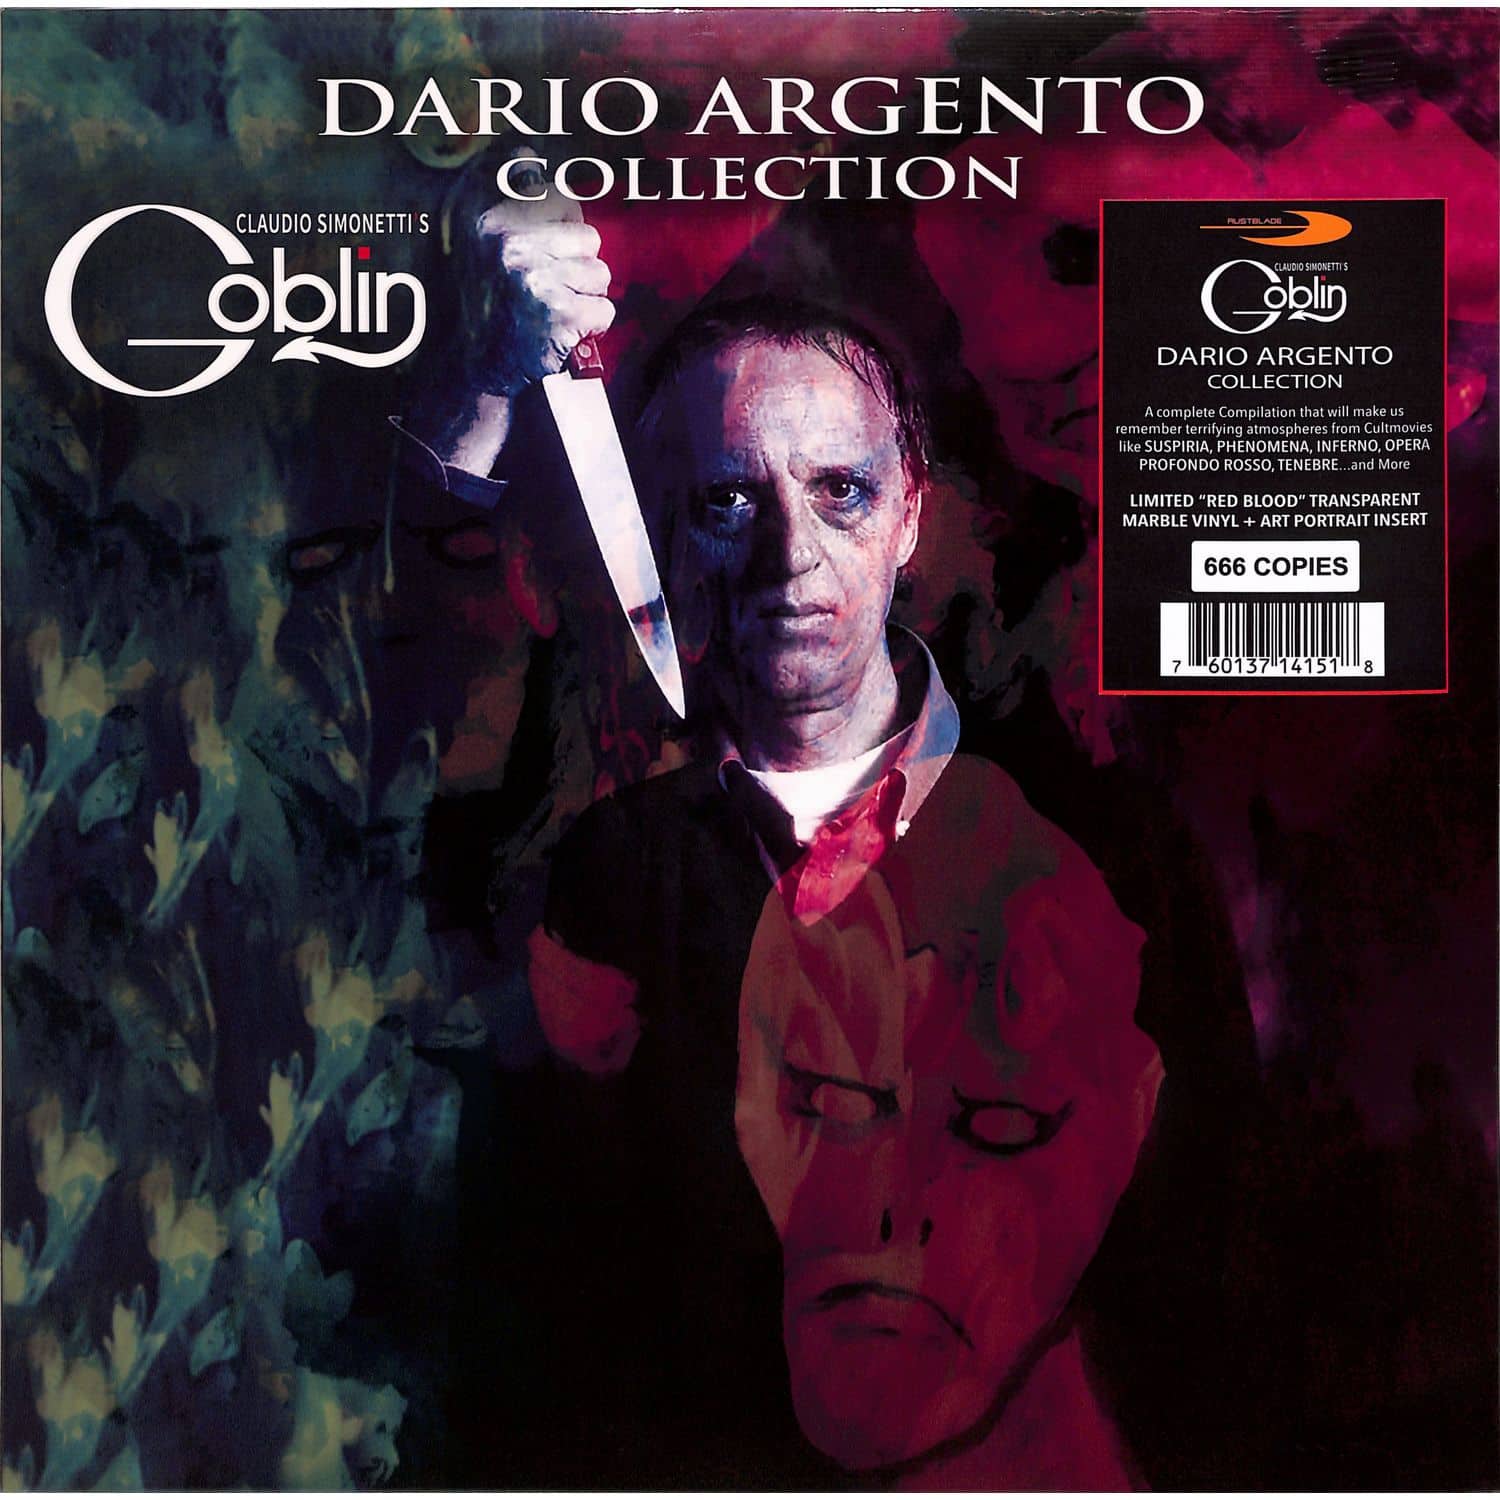 Claudio Simonetti s Goblin - DARIO ARGENTO COLLECTION 